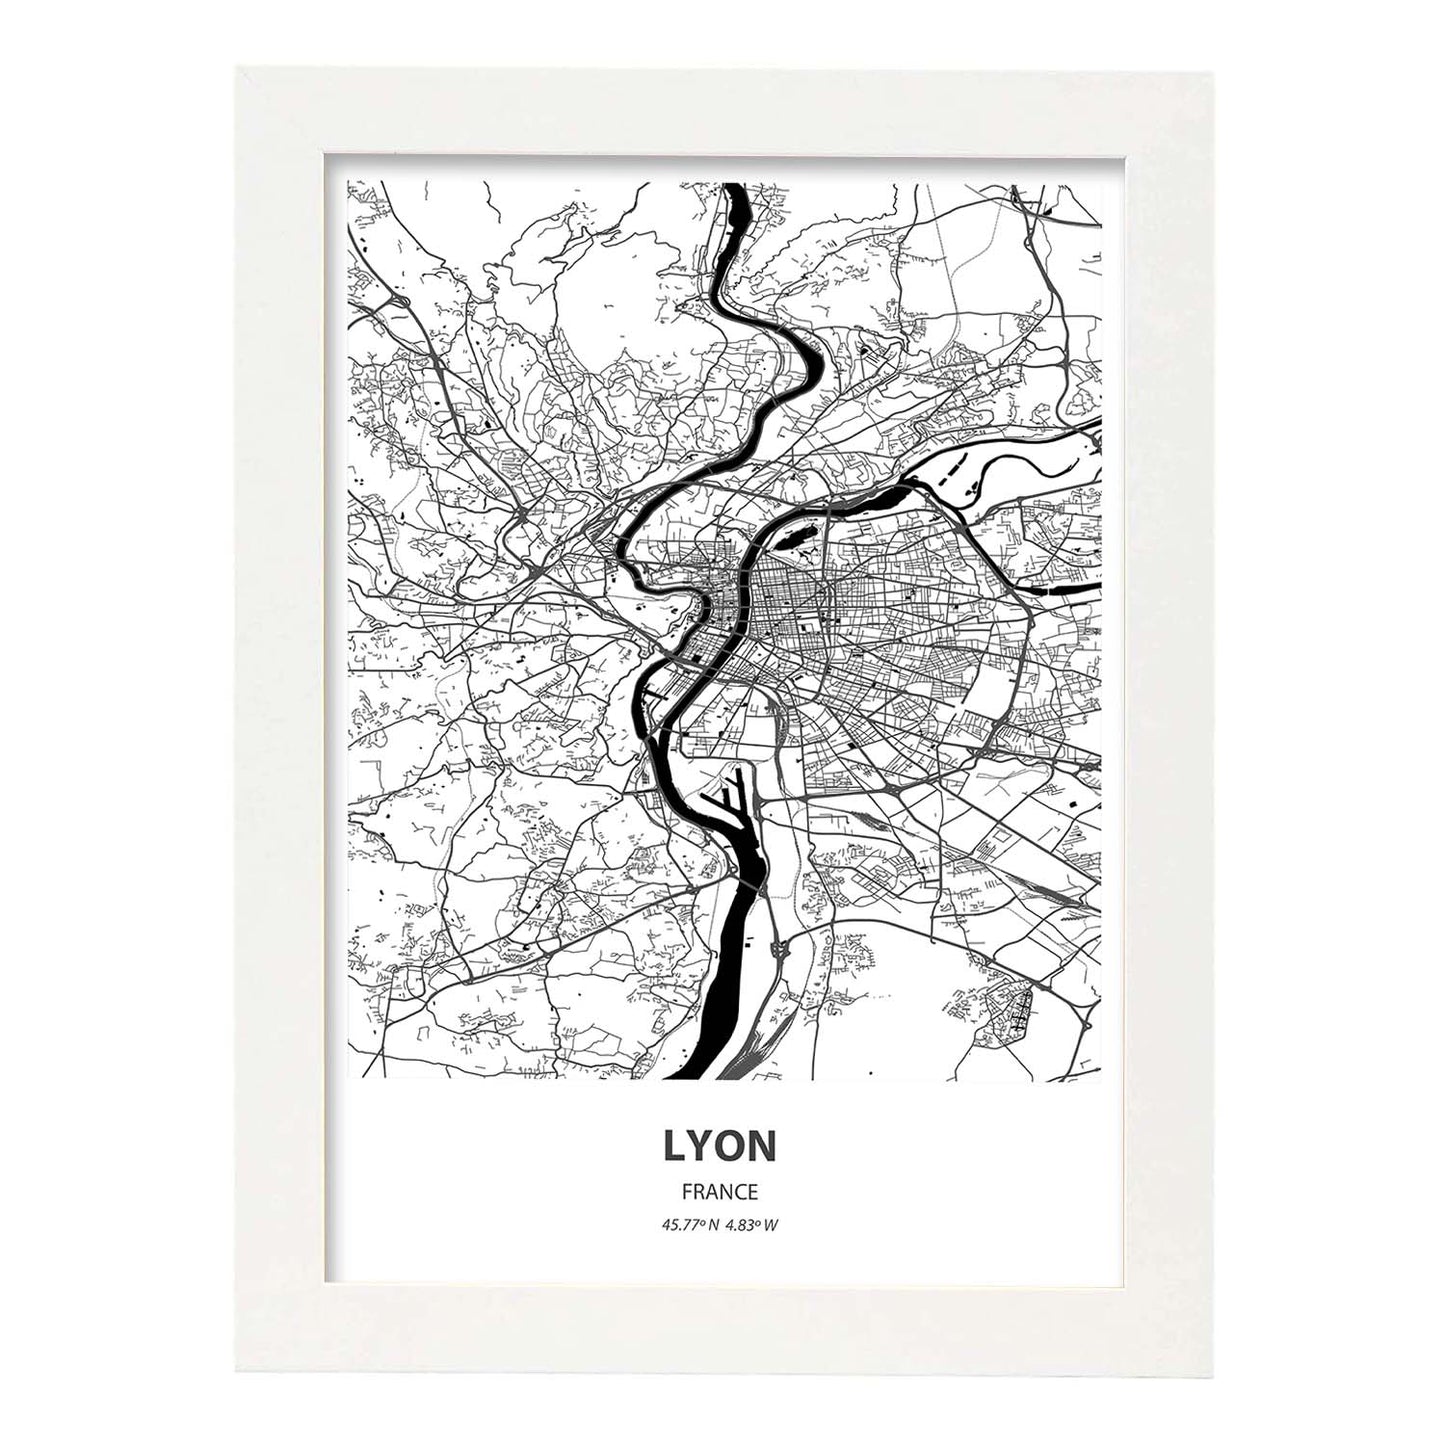 Poster con mapa de Lyon - Francia. Láminas de ciudades de Francia con mares y ríos en color negro.-Artwork-Nacnic-A4-Marco Blanco-Nacnic Estudio SL